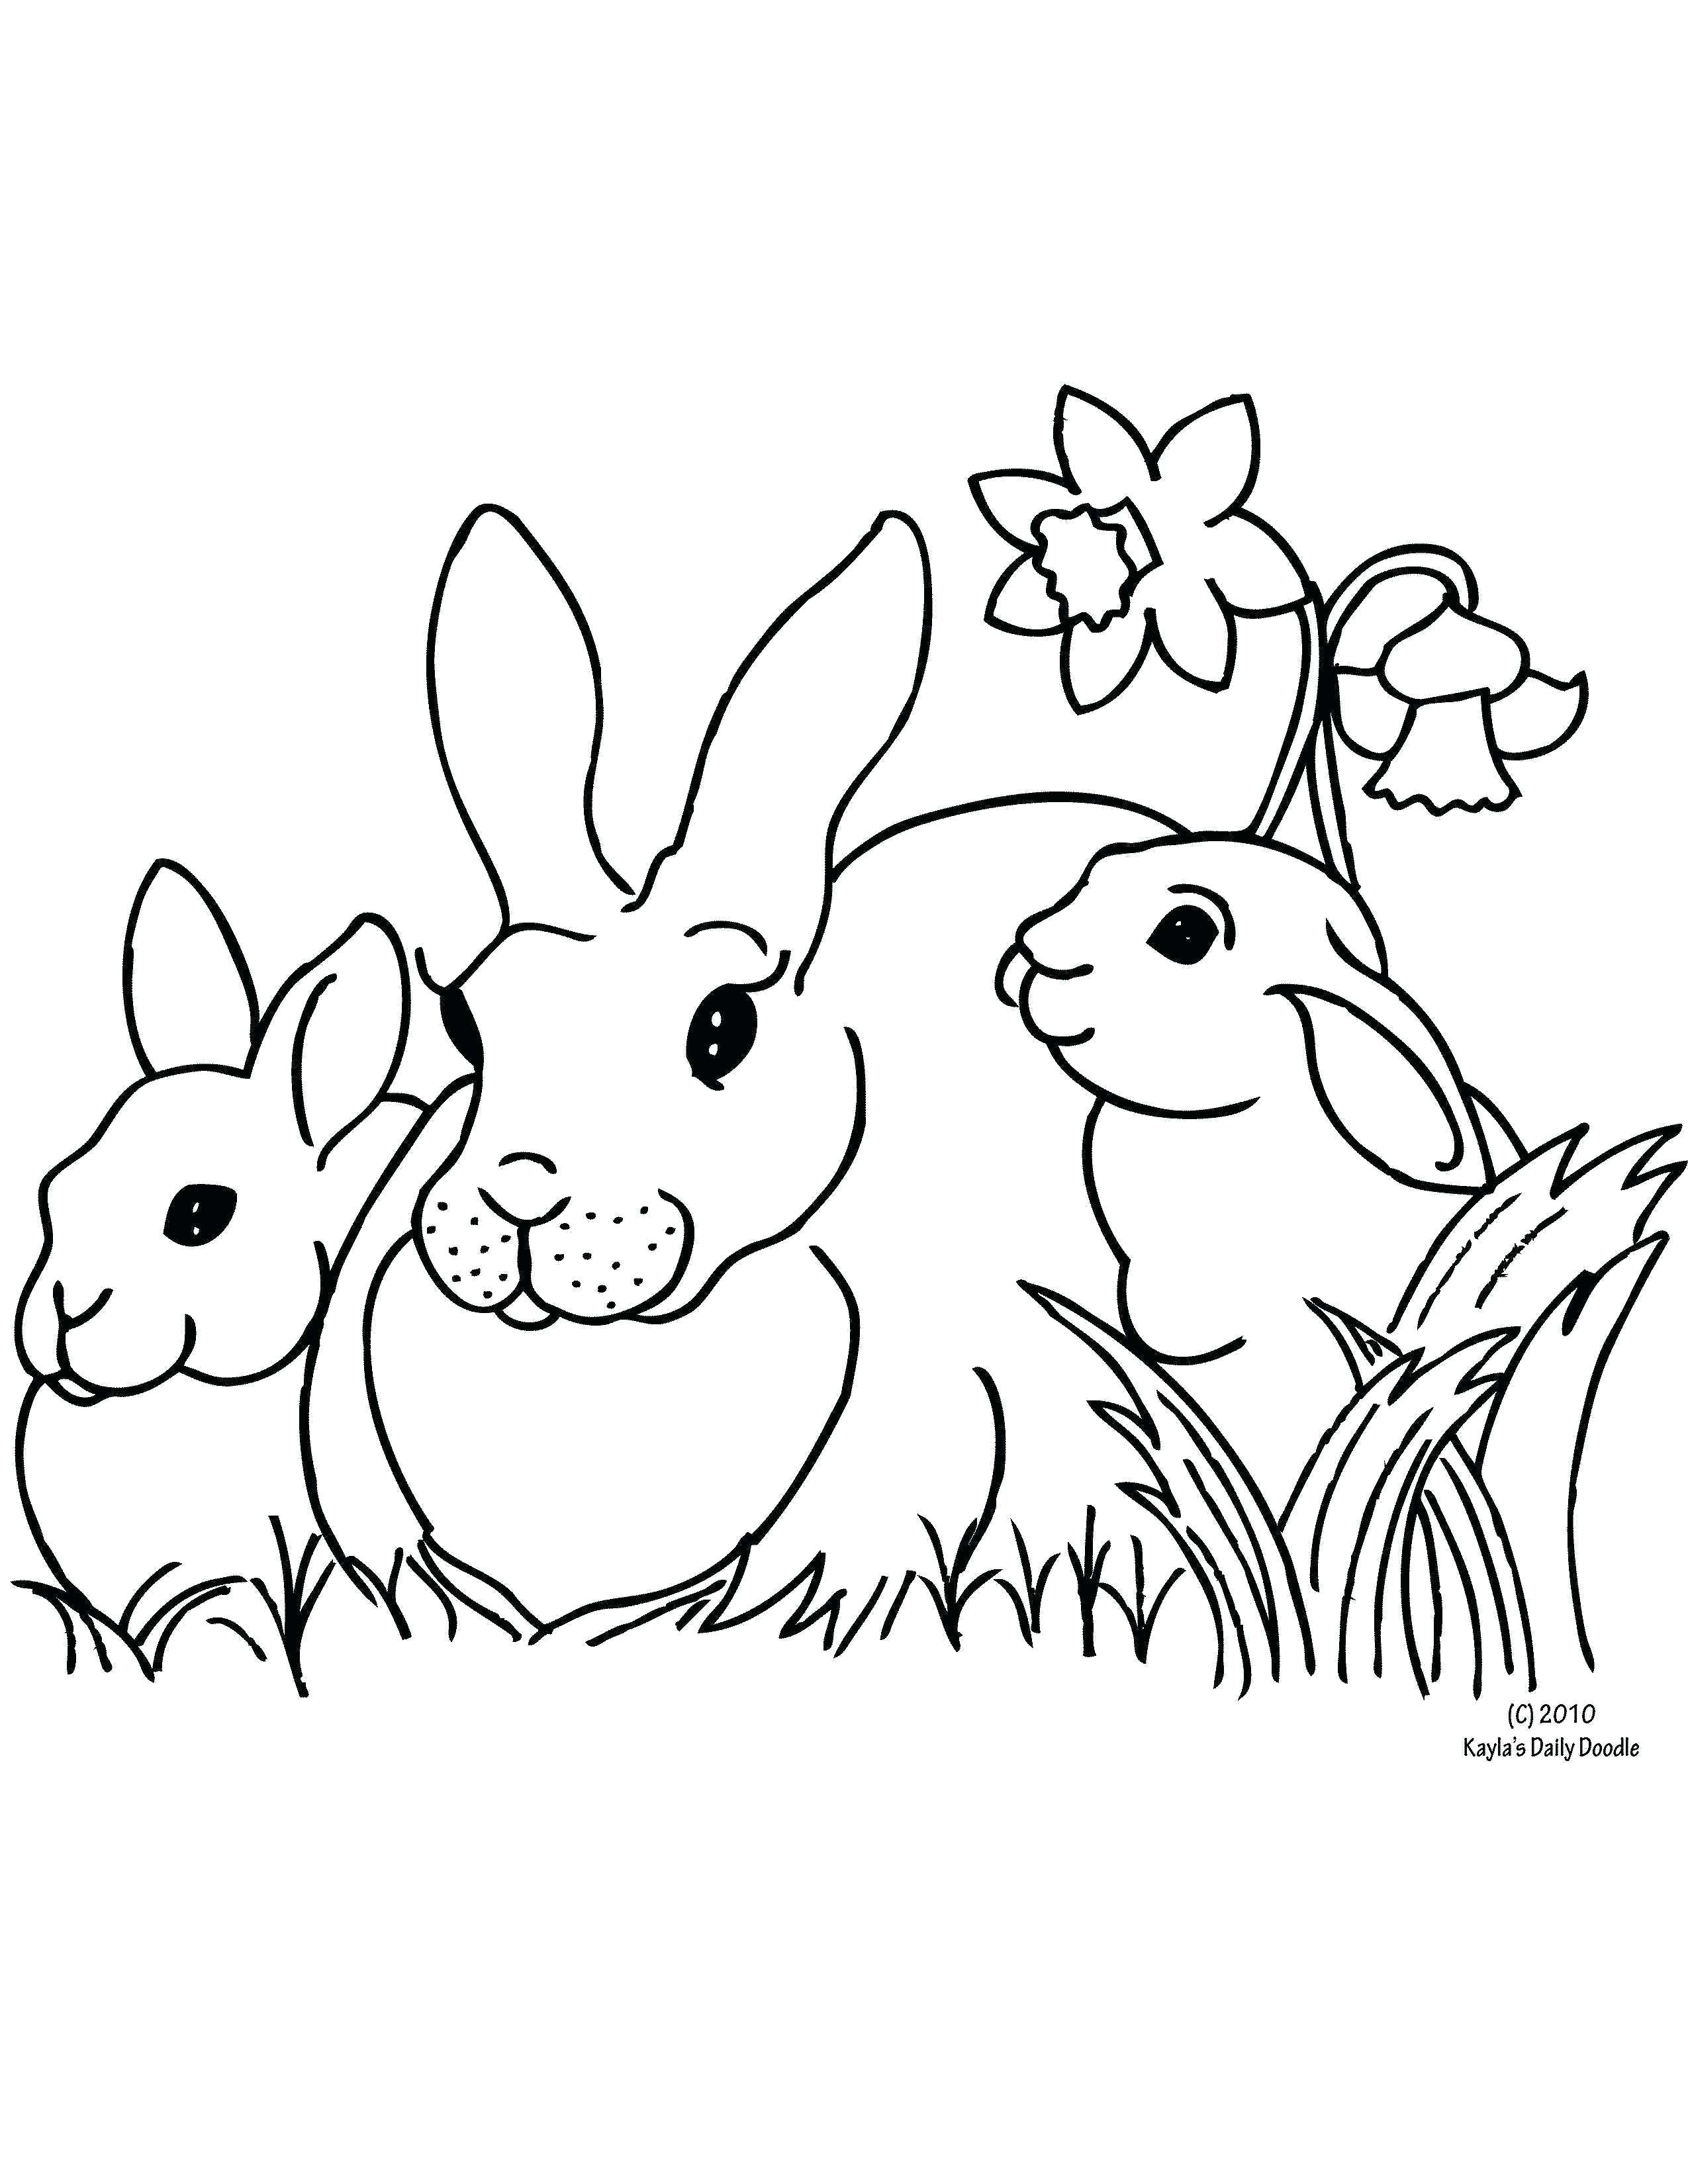 Bức tranh tô màu ngôi nhà của ba chú thỏ đứng cạnh cành hoa